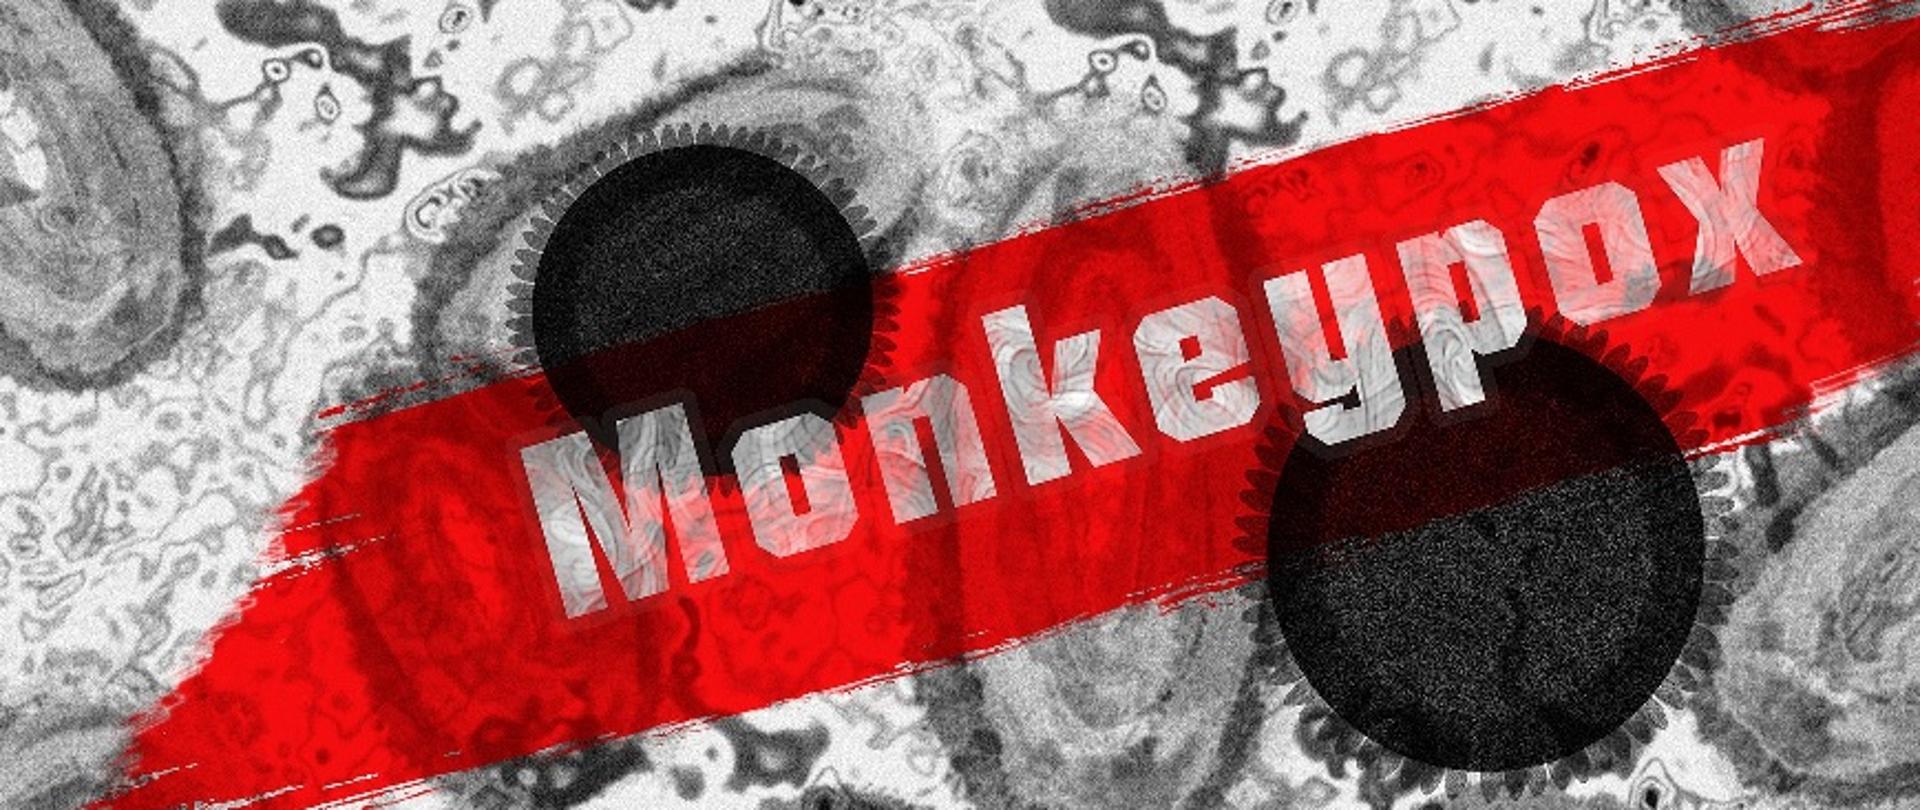 Na biało-czarnym tle wizerunku wirusa spod mikroskopu umieszczony jest na czerwonym tle biały napis Monkeypox (Małpia ospa)